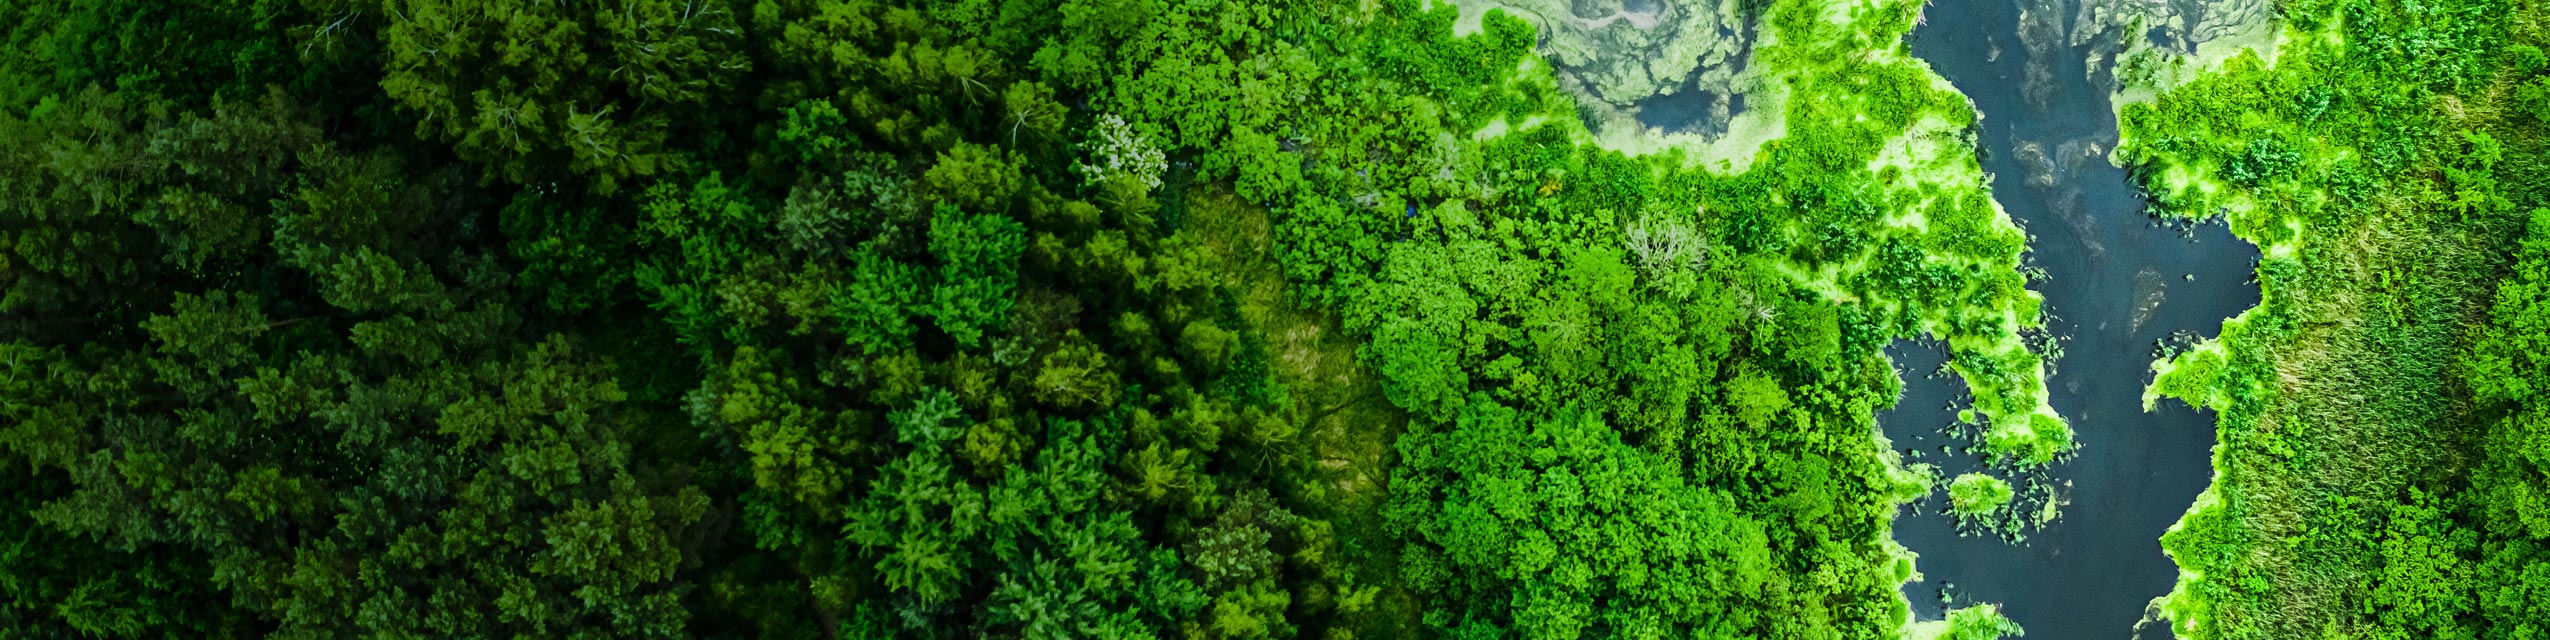 俯瞰绿色的森林和水。